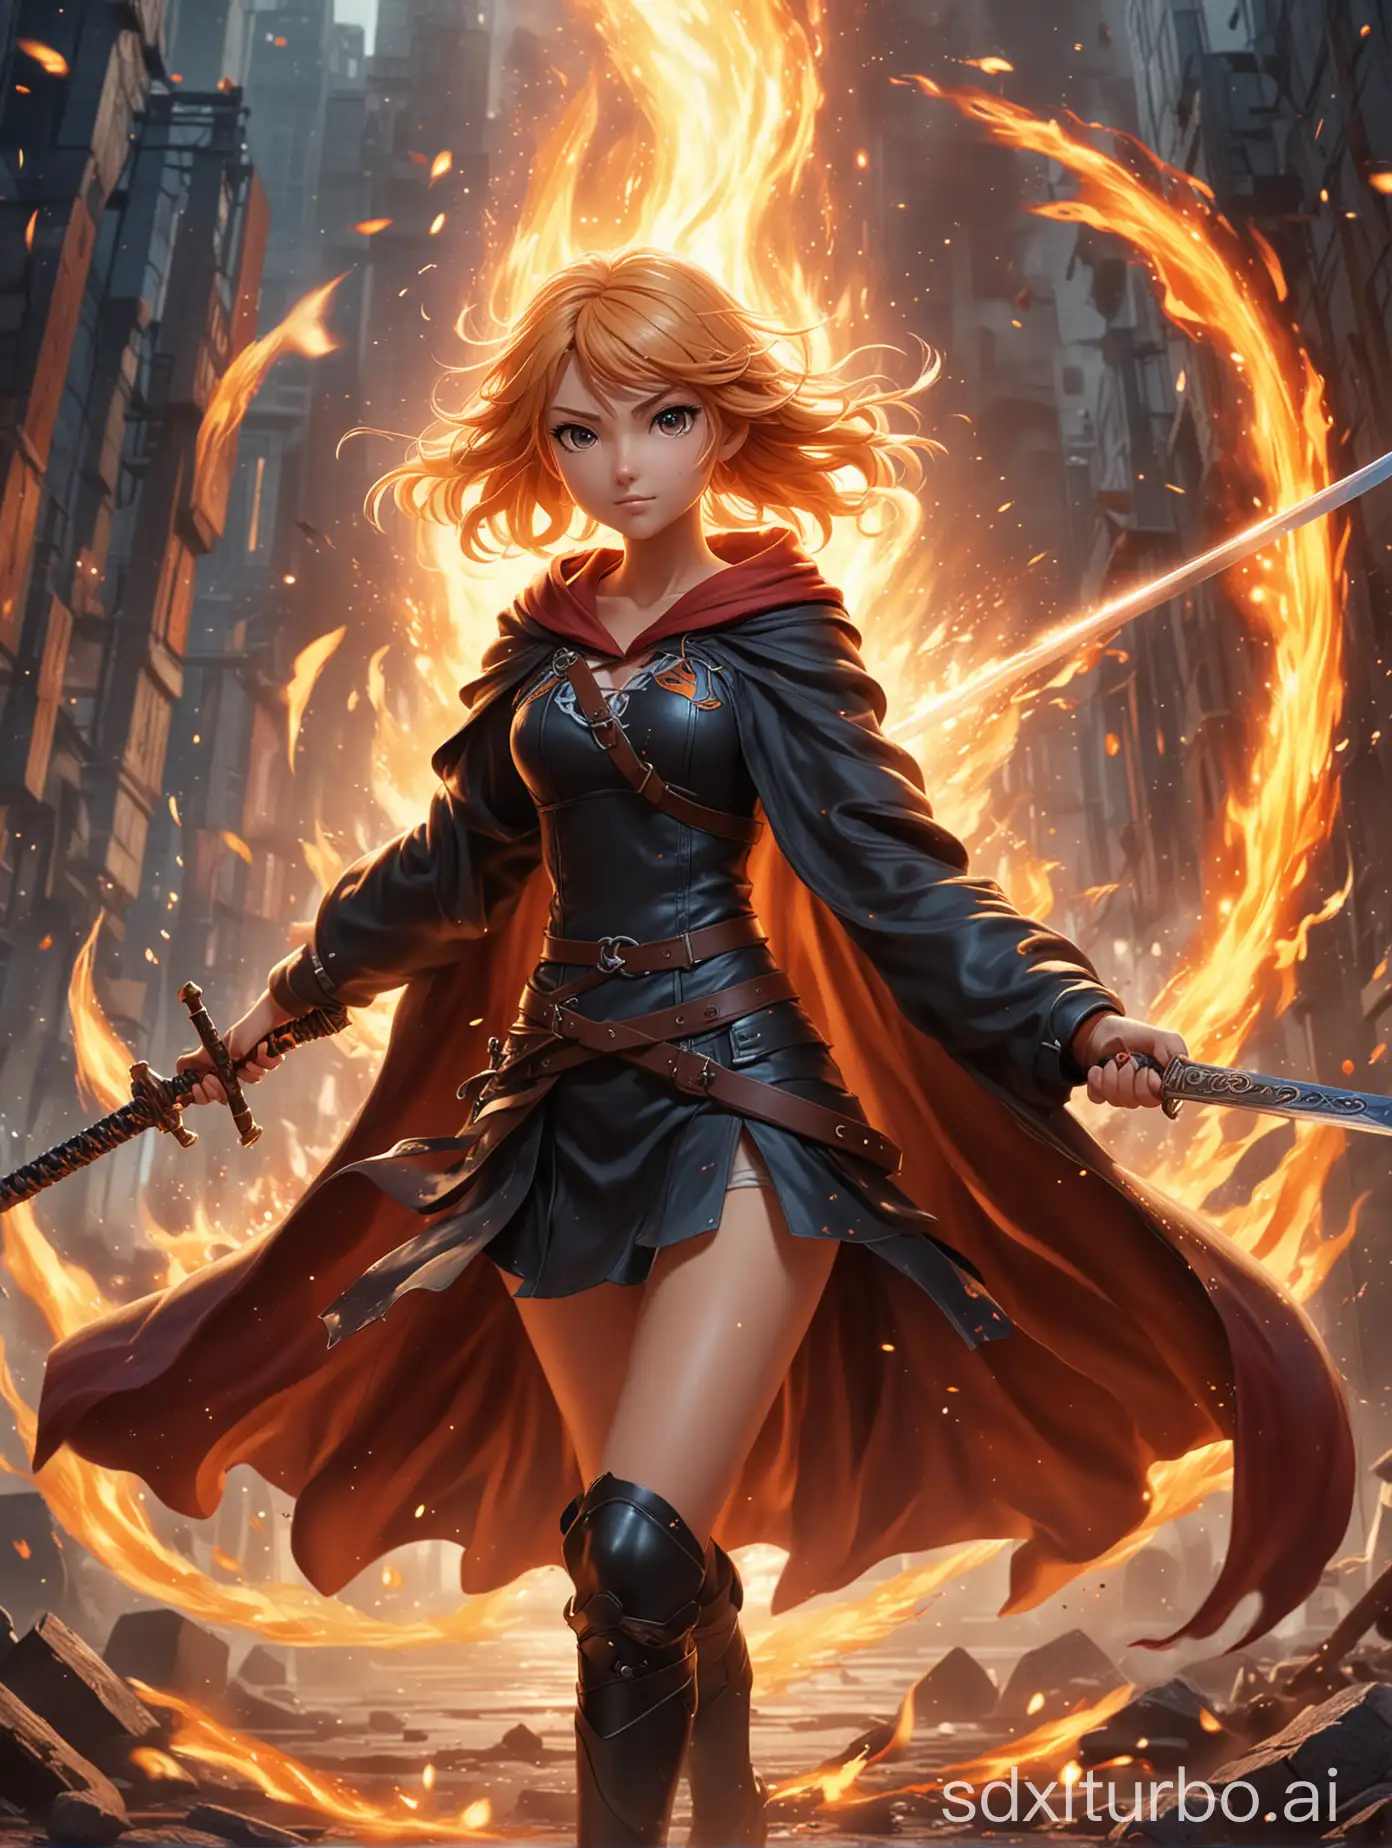 Anime-Swordswoman-in-Fiery-Battle-Dynamic-Action-Poster